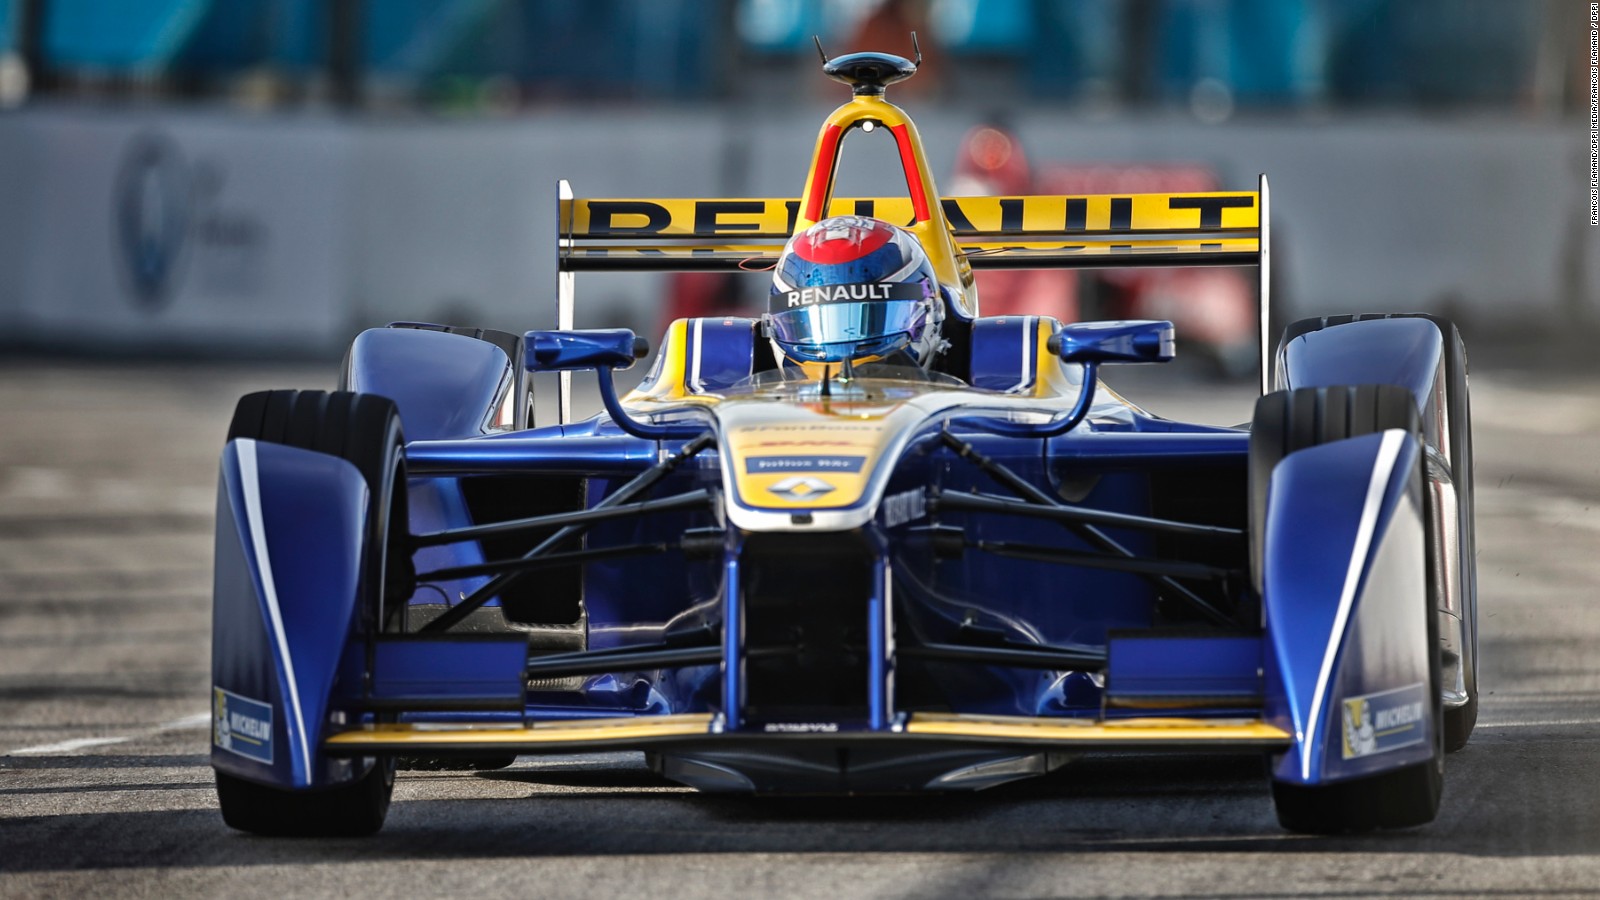 Renault returns to F1, seeks greater exposure - CNN